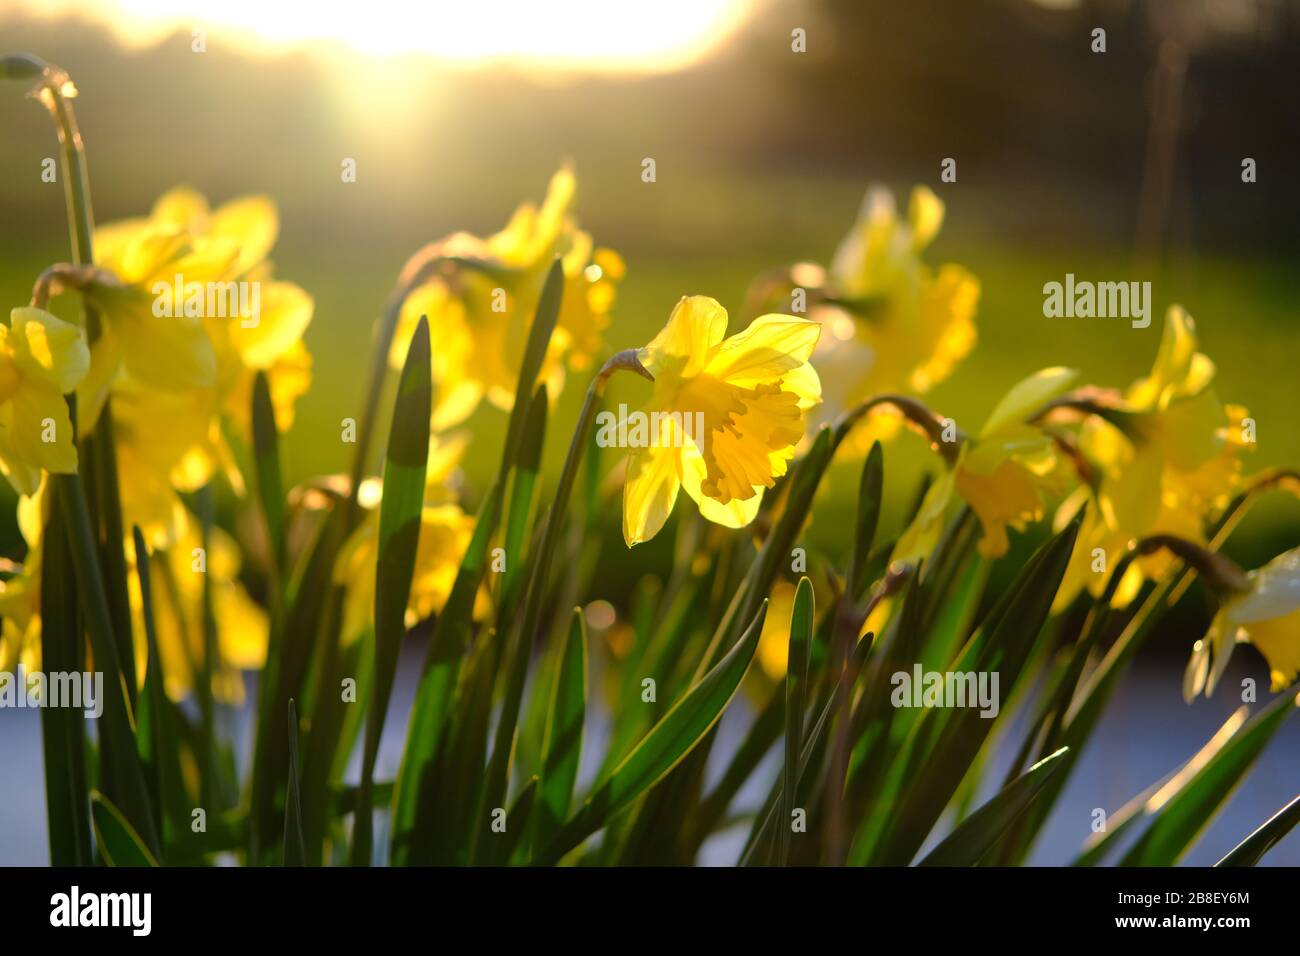 Il tradizionale fiore di narcisi con petali gialli e bianchi. I narcisi sono i fiori primaverili più belli. Preso a Staffordshire, Regno Unito. Foto Stock